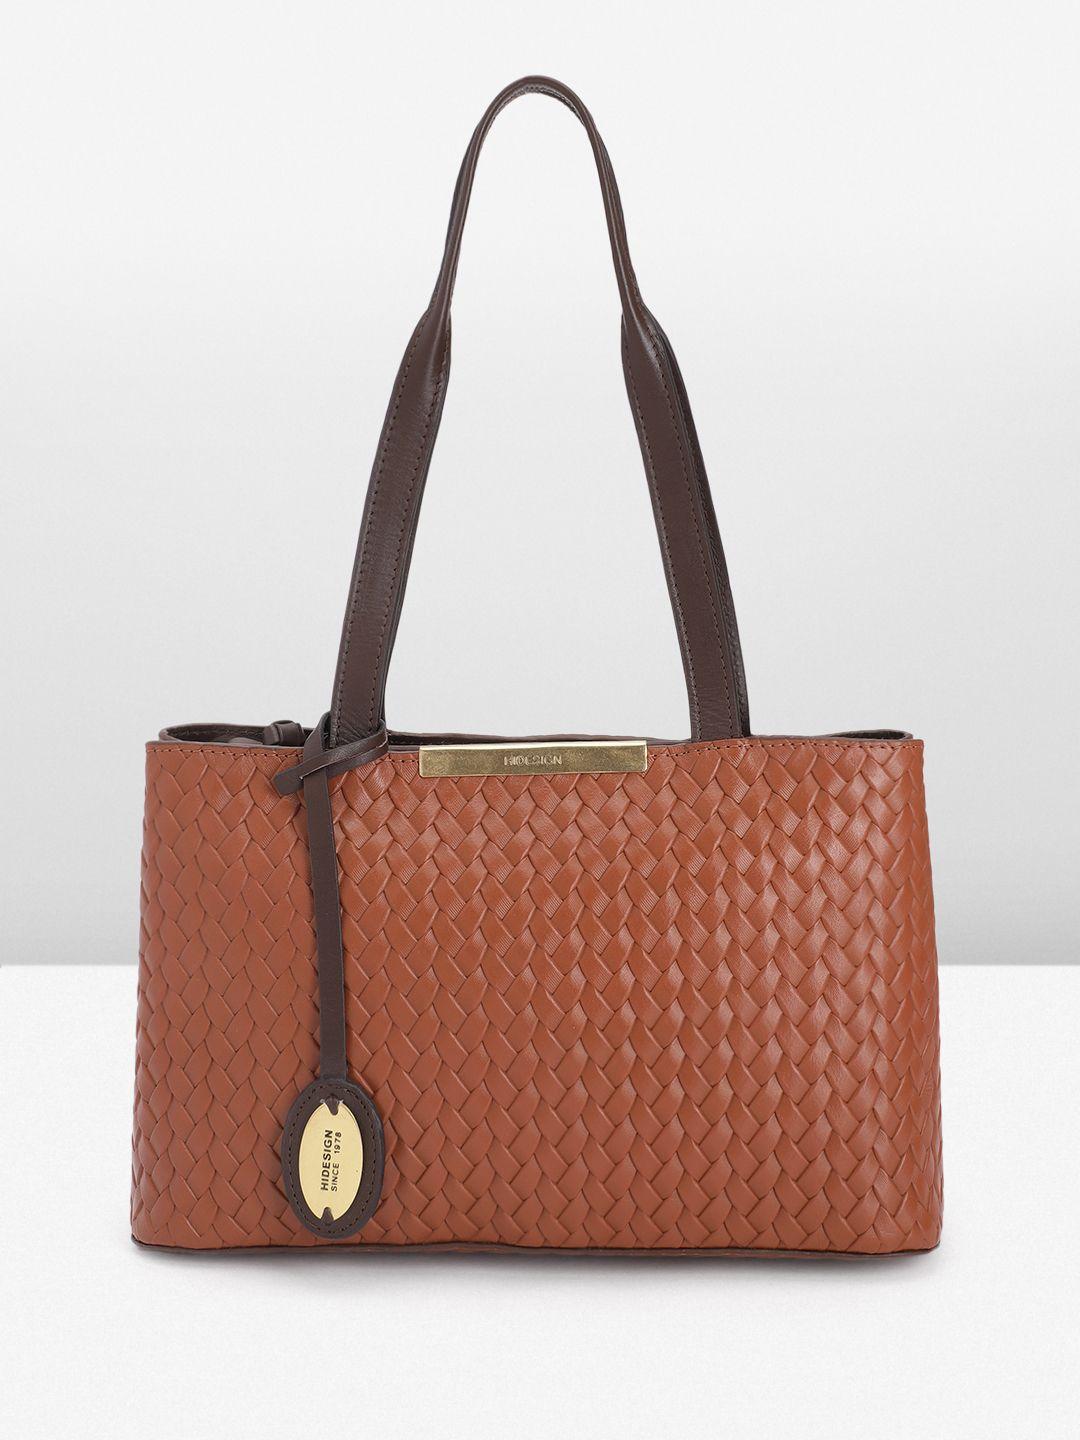 hidesign women leather textured shoulder bag